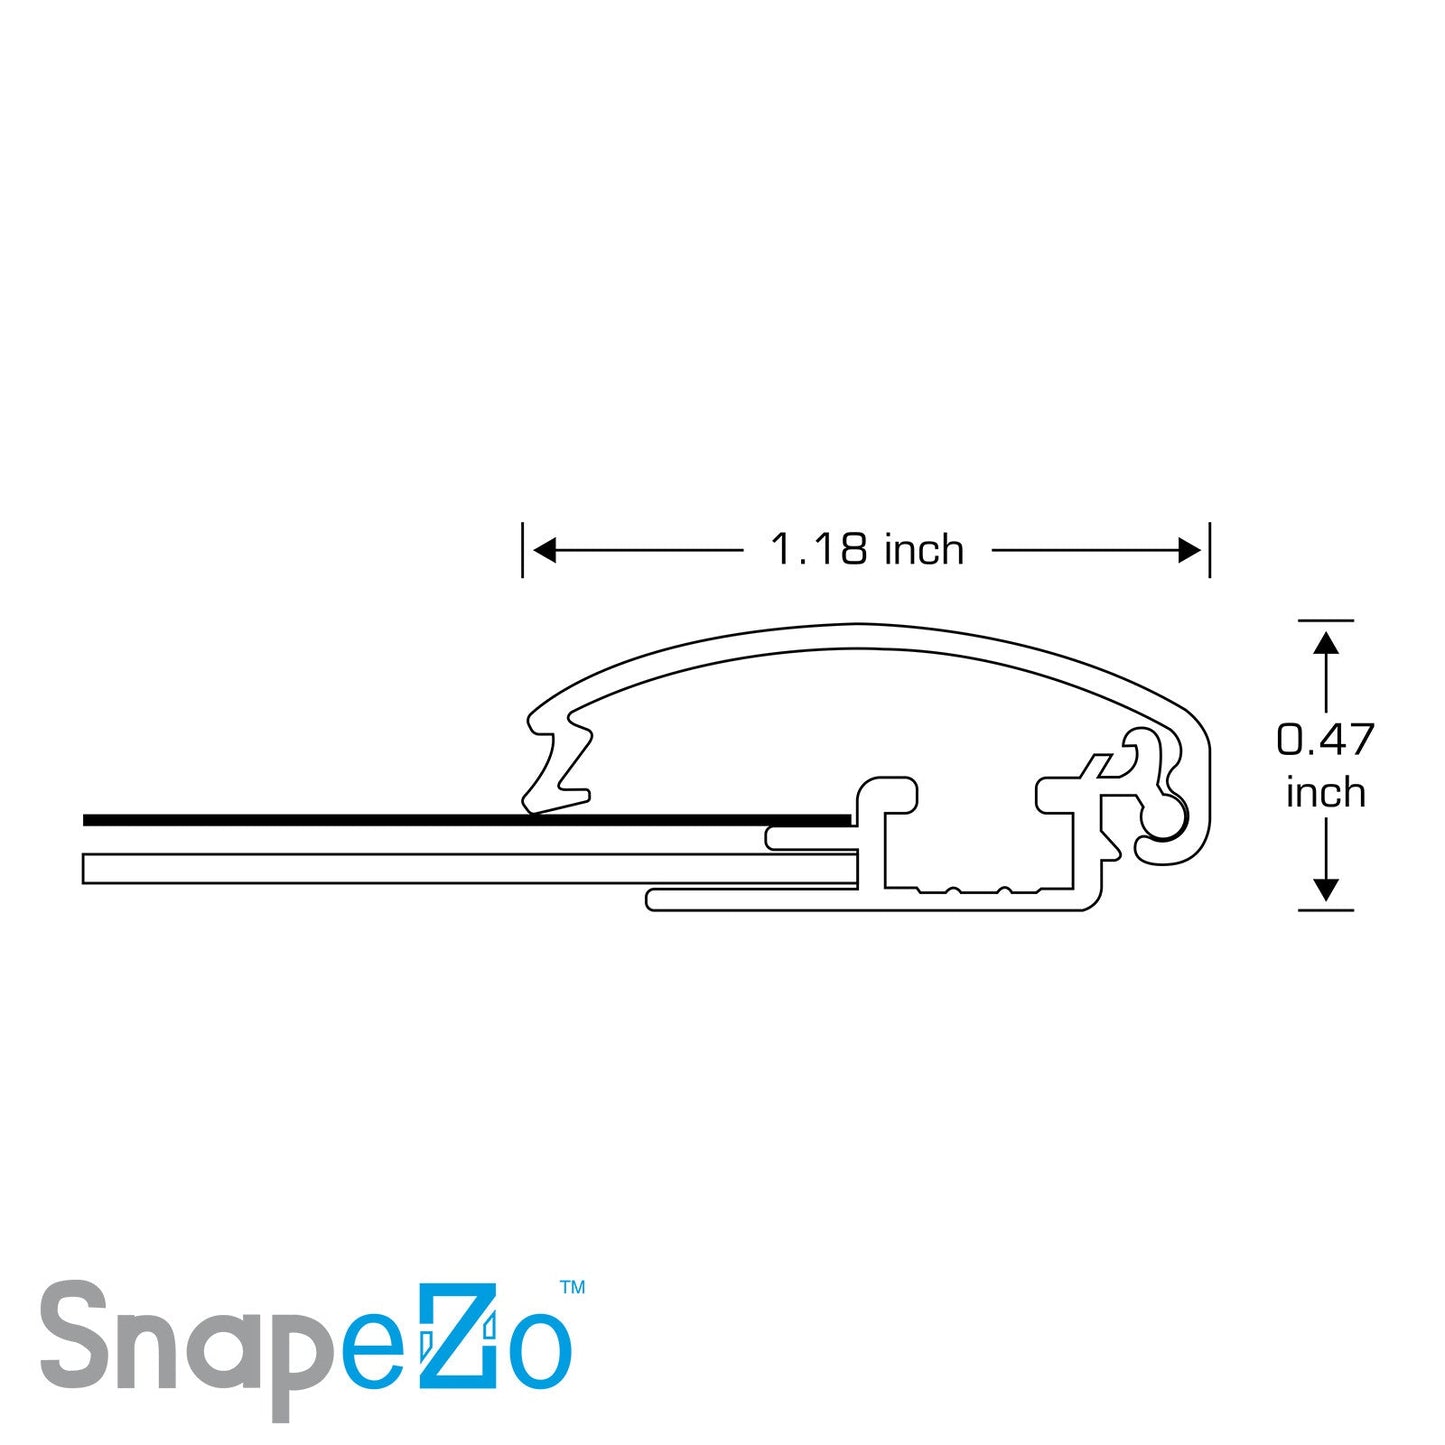 24x32 Green SnapeZo® Snap Frame - 1.2" Profile